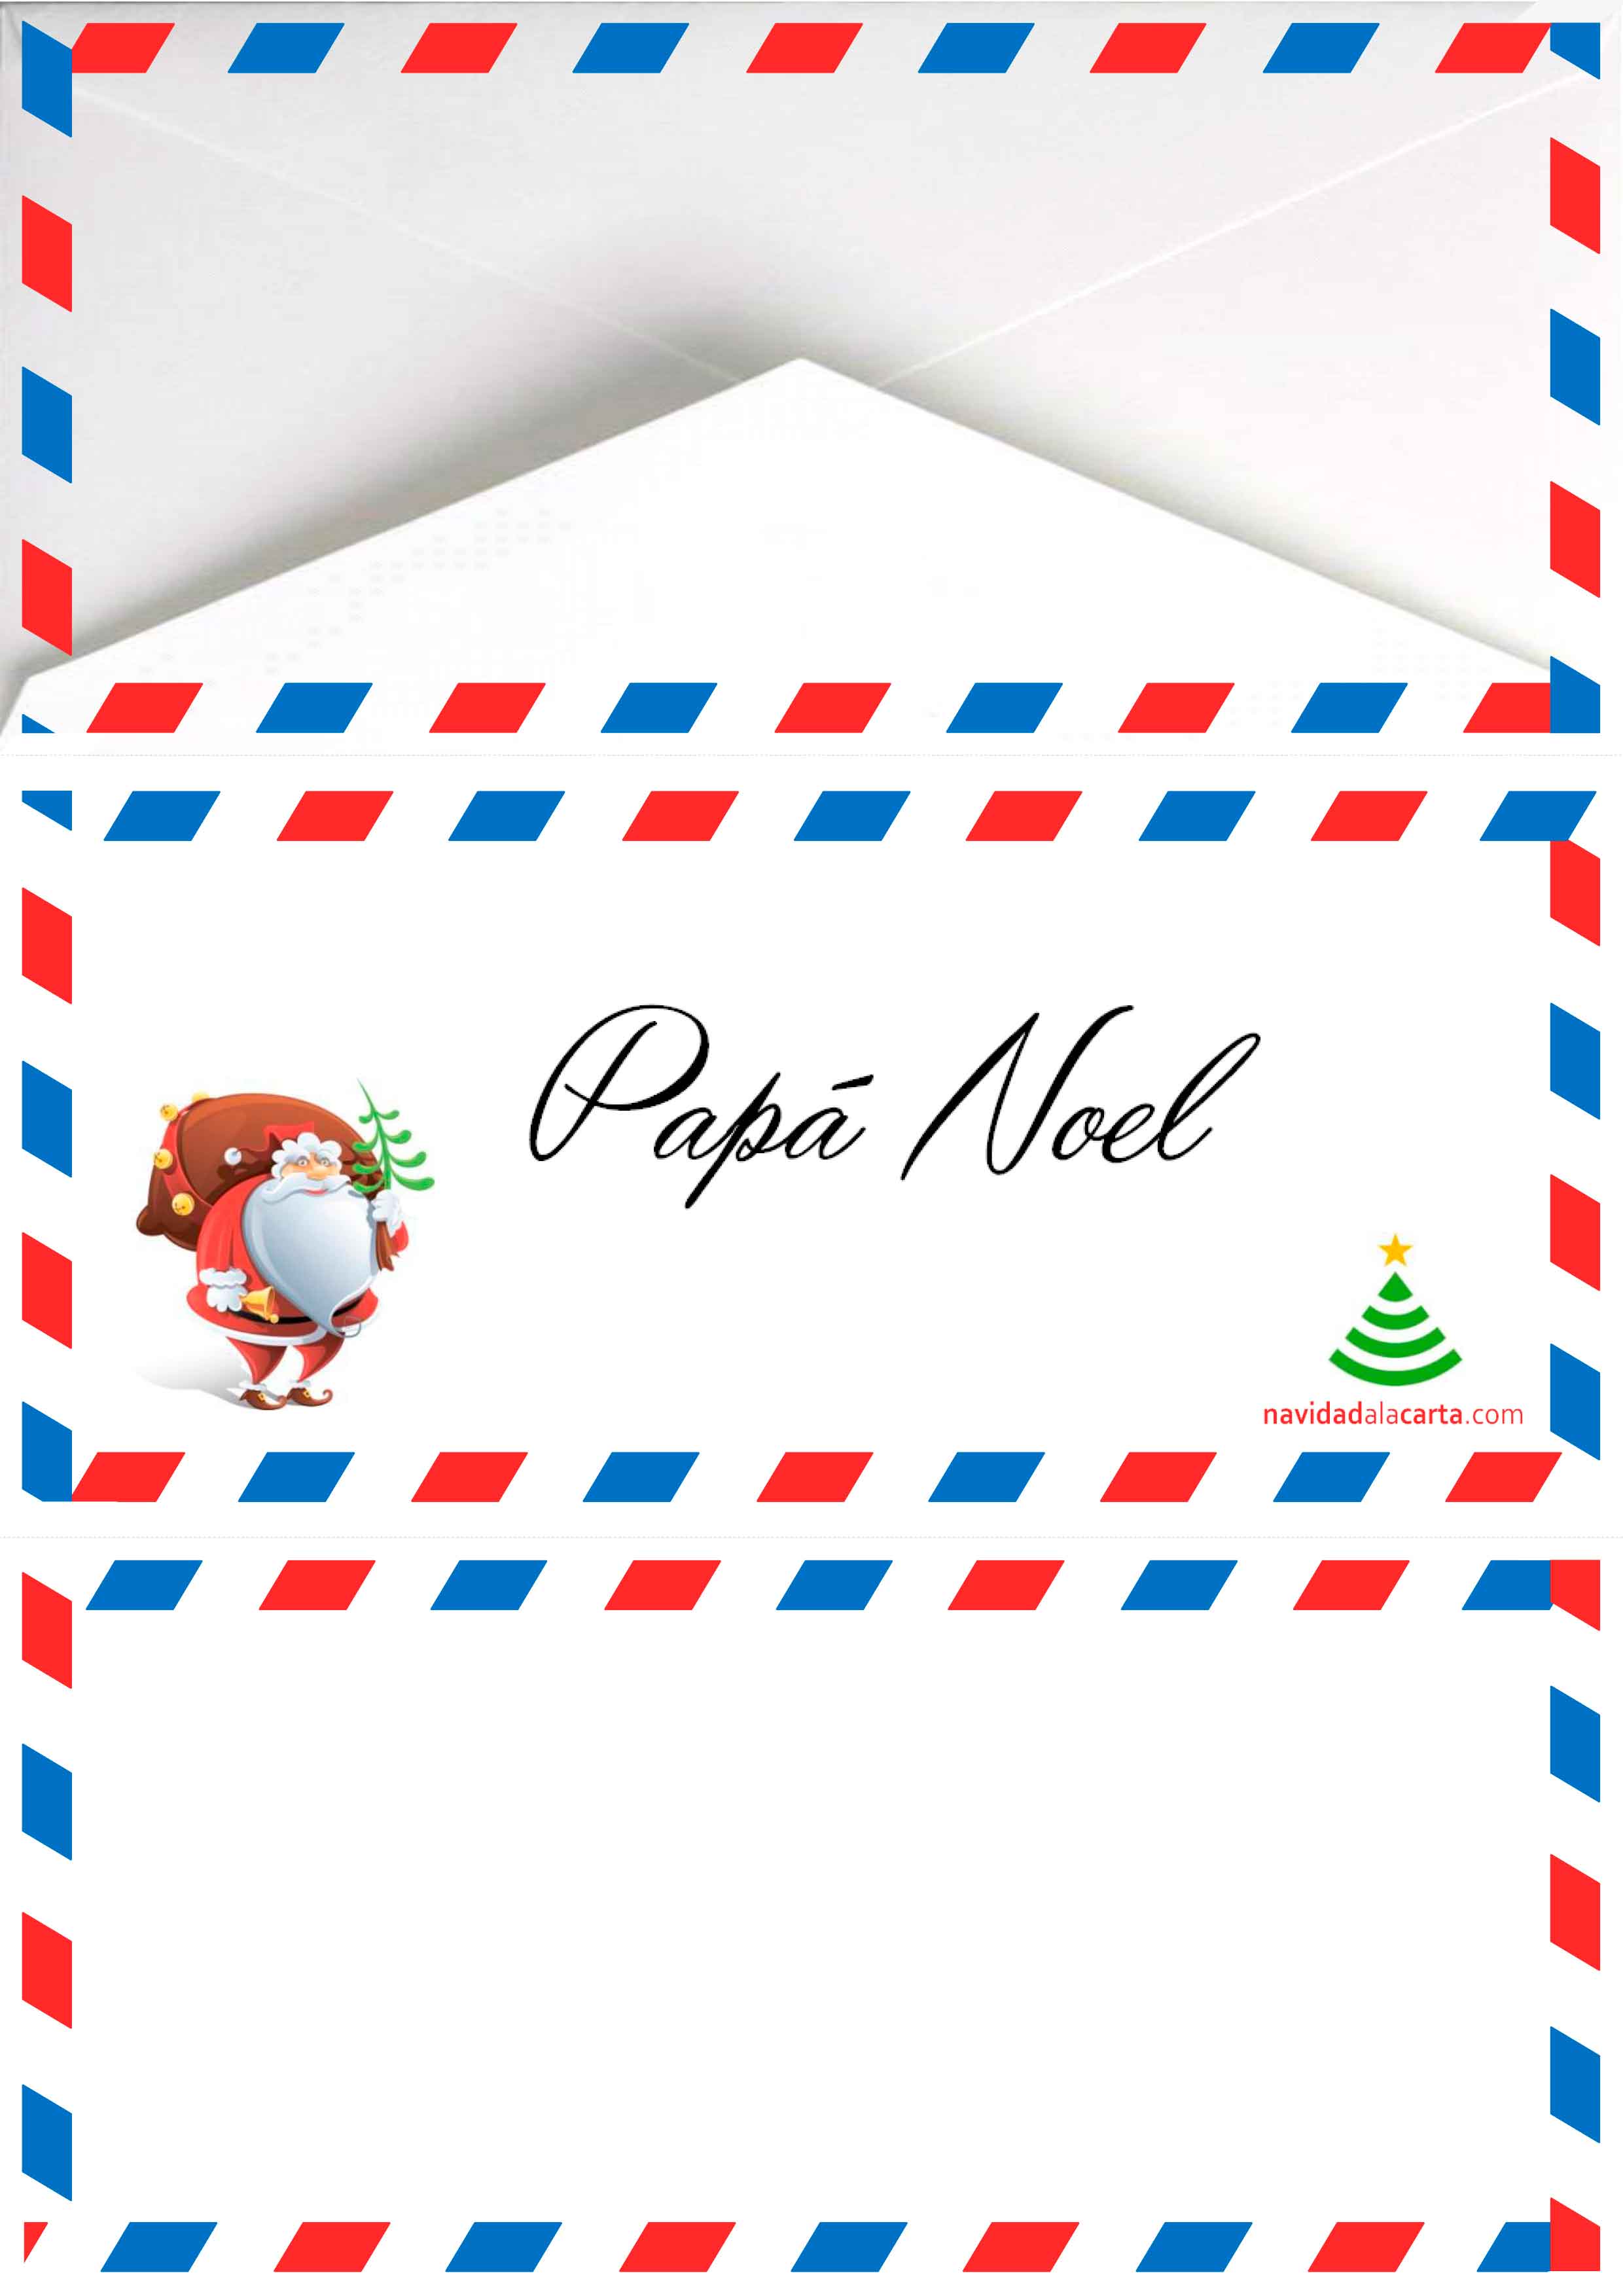 Sobre Carta Papa Noel Carta a los Reyes Magos y Papá Noel - Navidad a la Carta